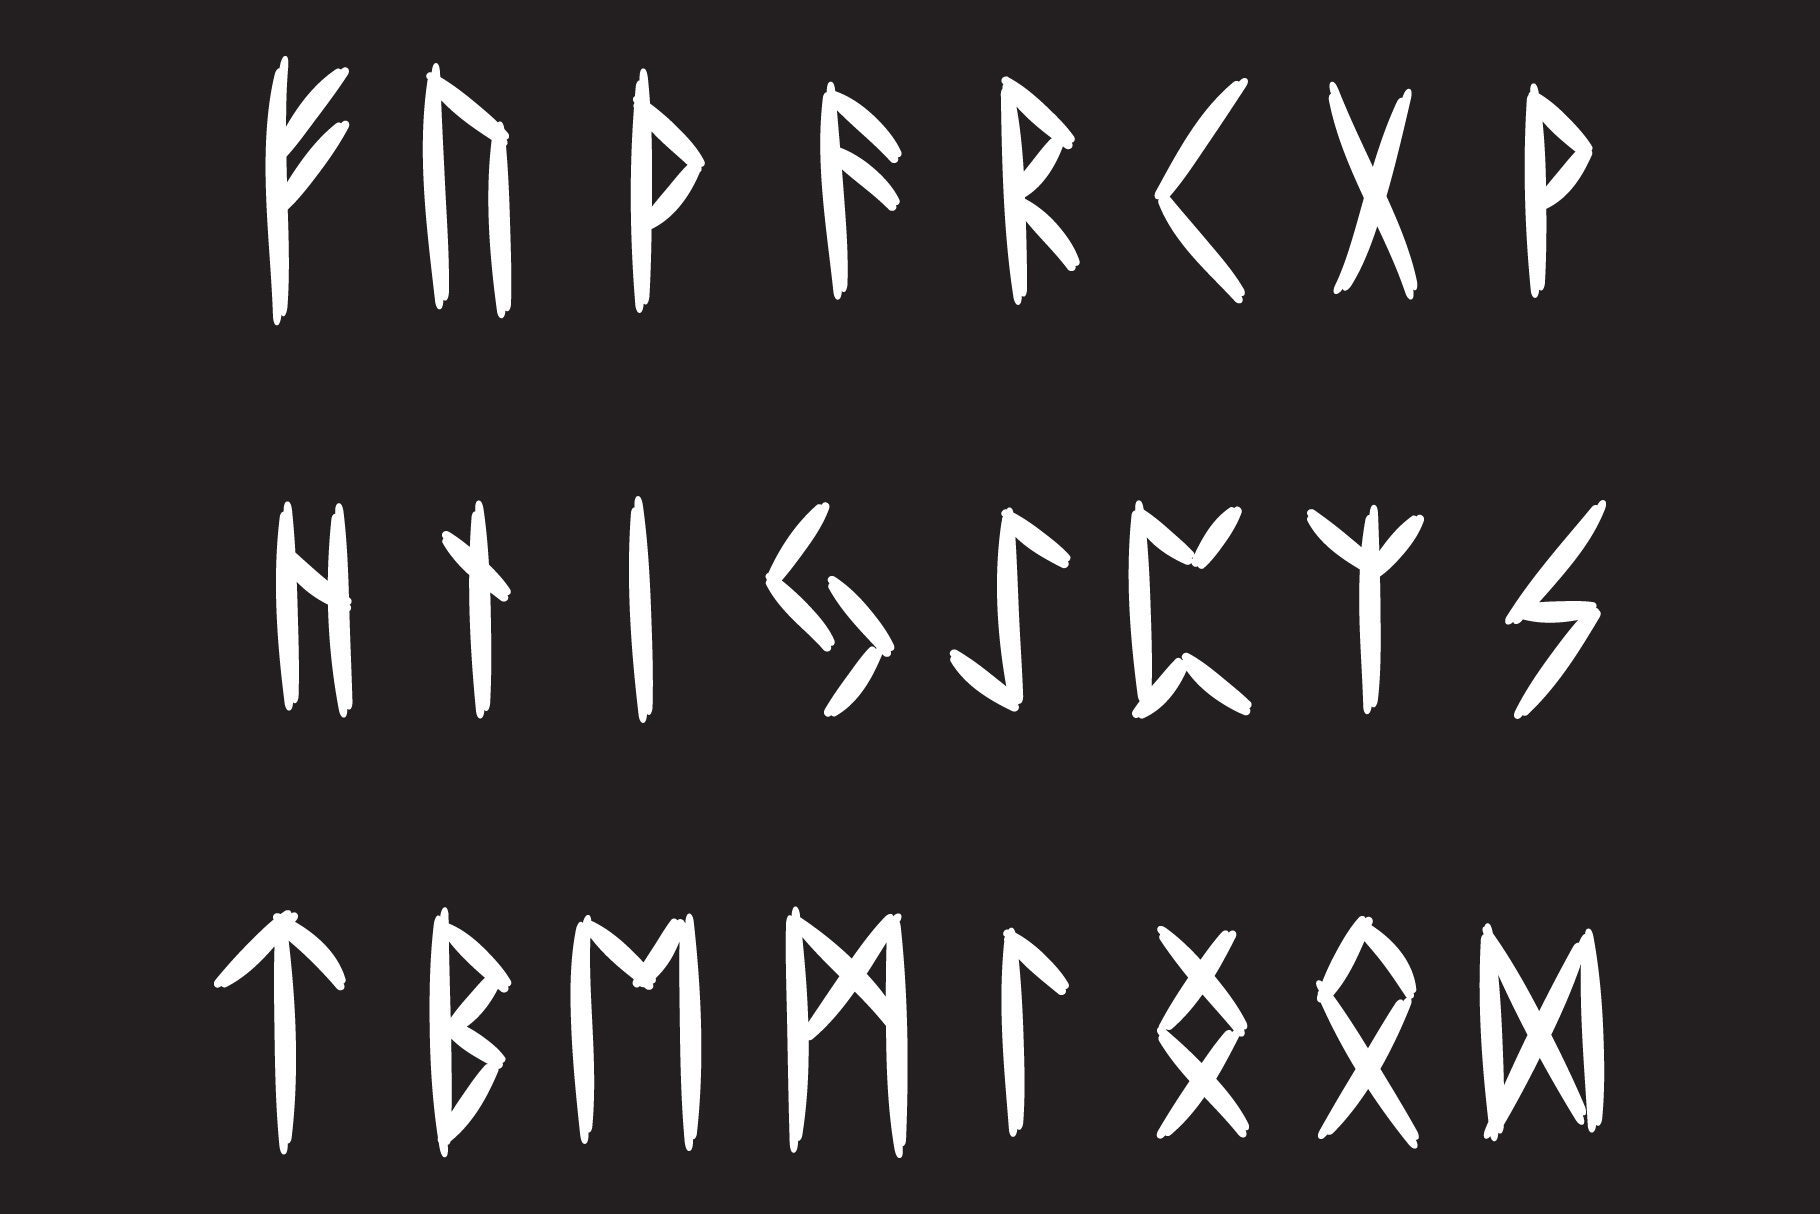 elder futhark runes unicode